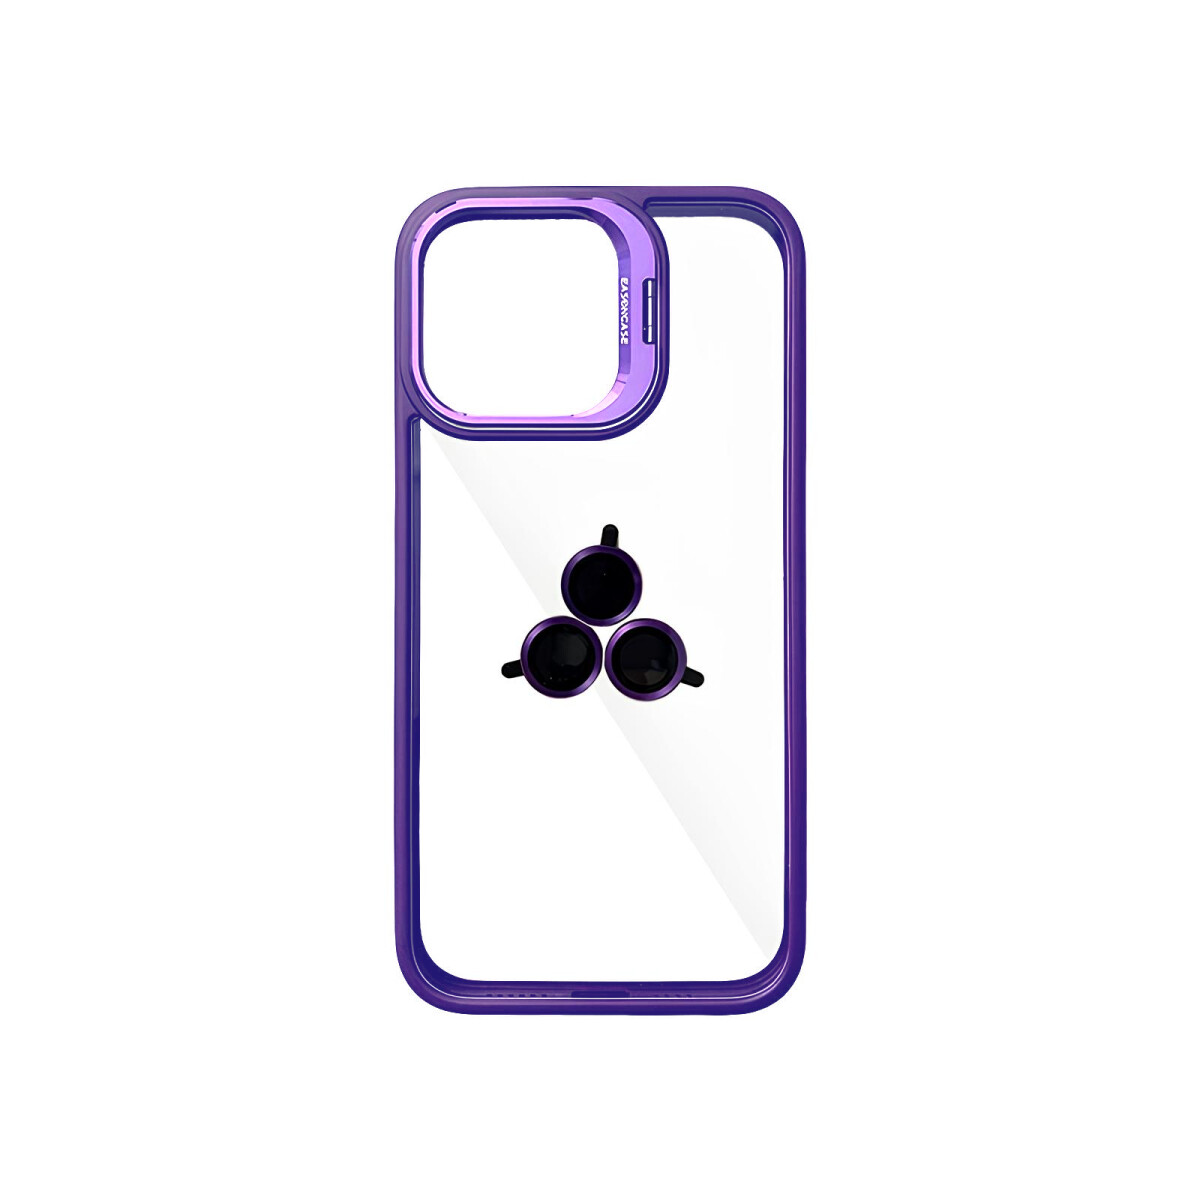 Case Transparente con Borde de Color y Protector de Lente Iphone 11 - Lilac 